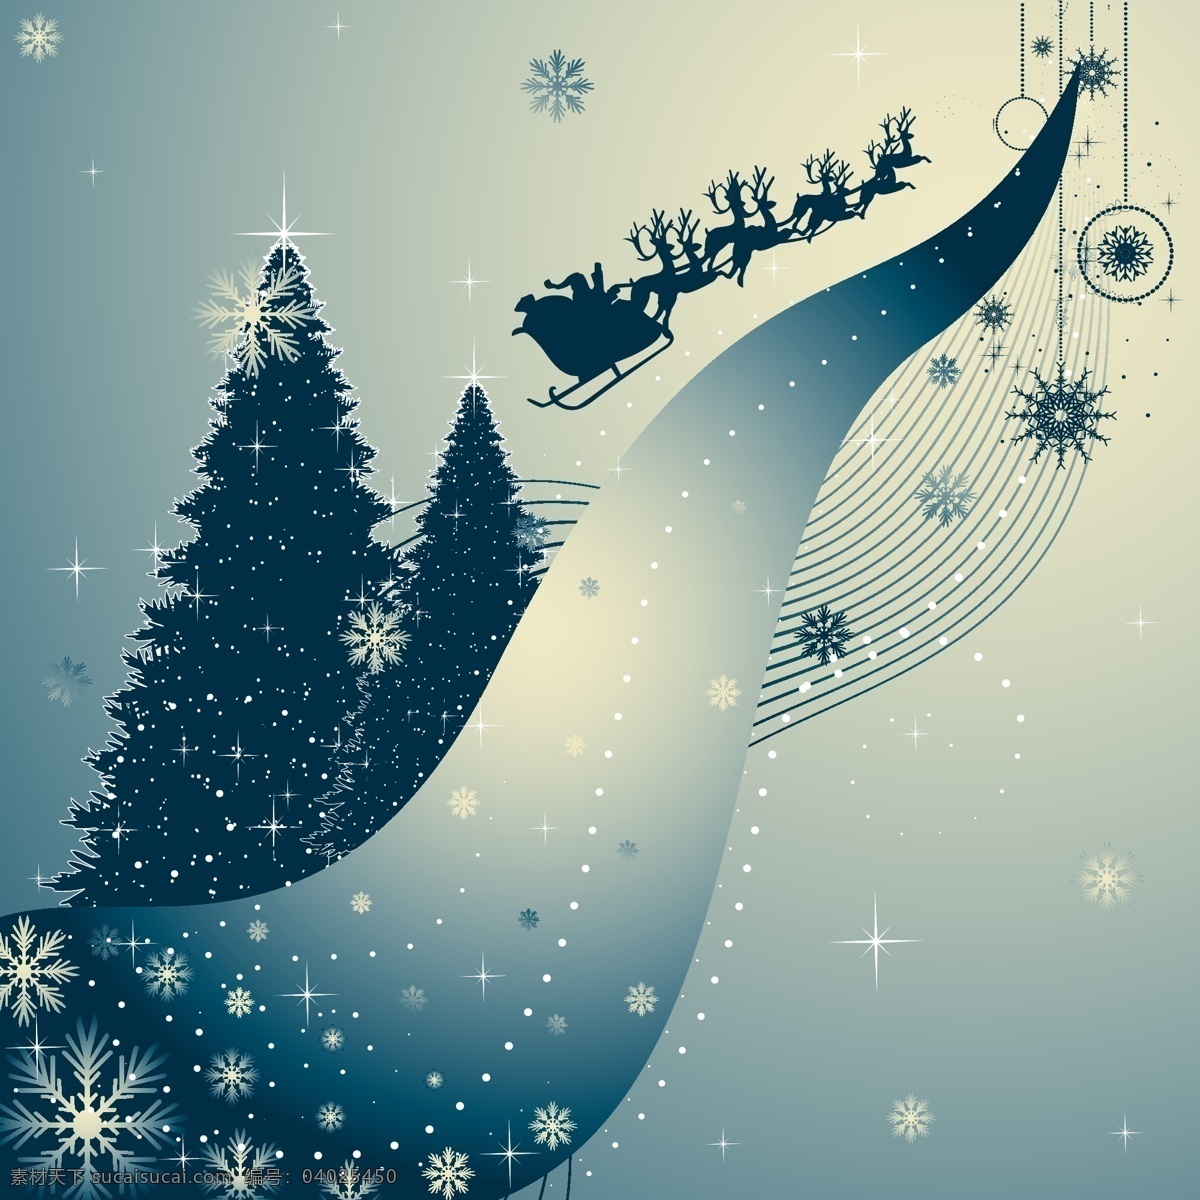 墨 蓝色 圣诞节 场景 墨蓝色 圣诞节场景 雪花圣诞树 新年 背景素材 背景墙纸 壁纸 矢量素材 自然景观 自然风光 白色